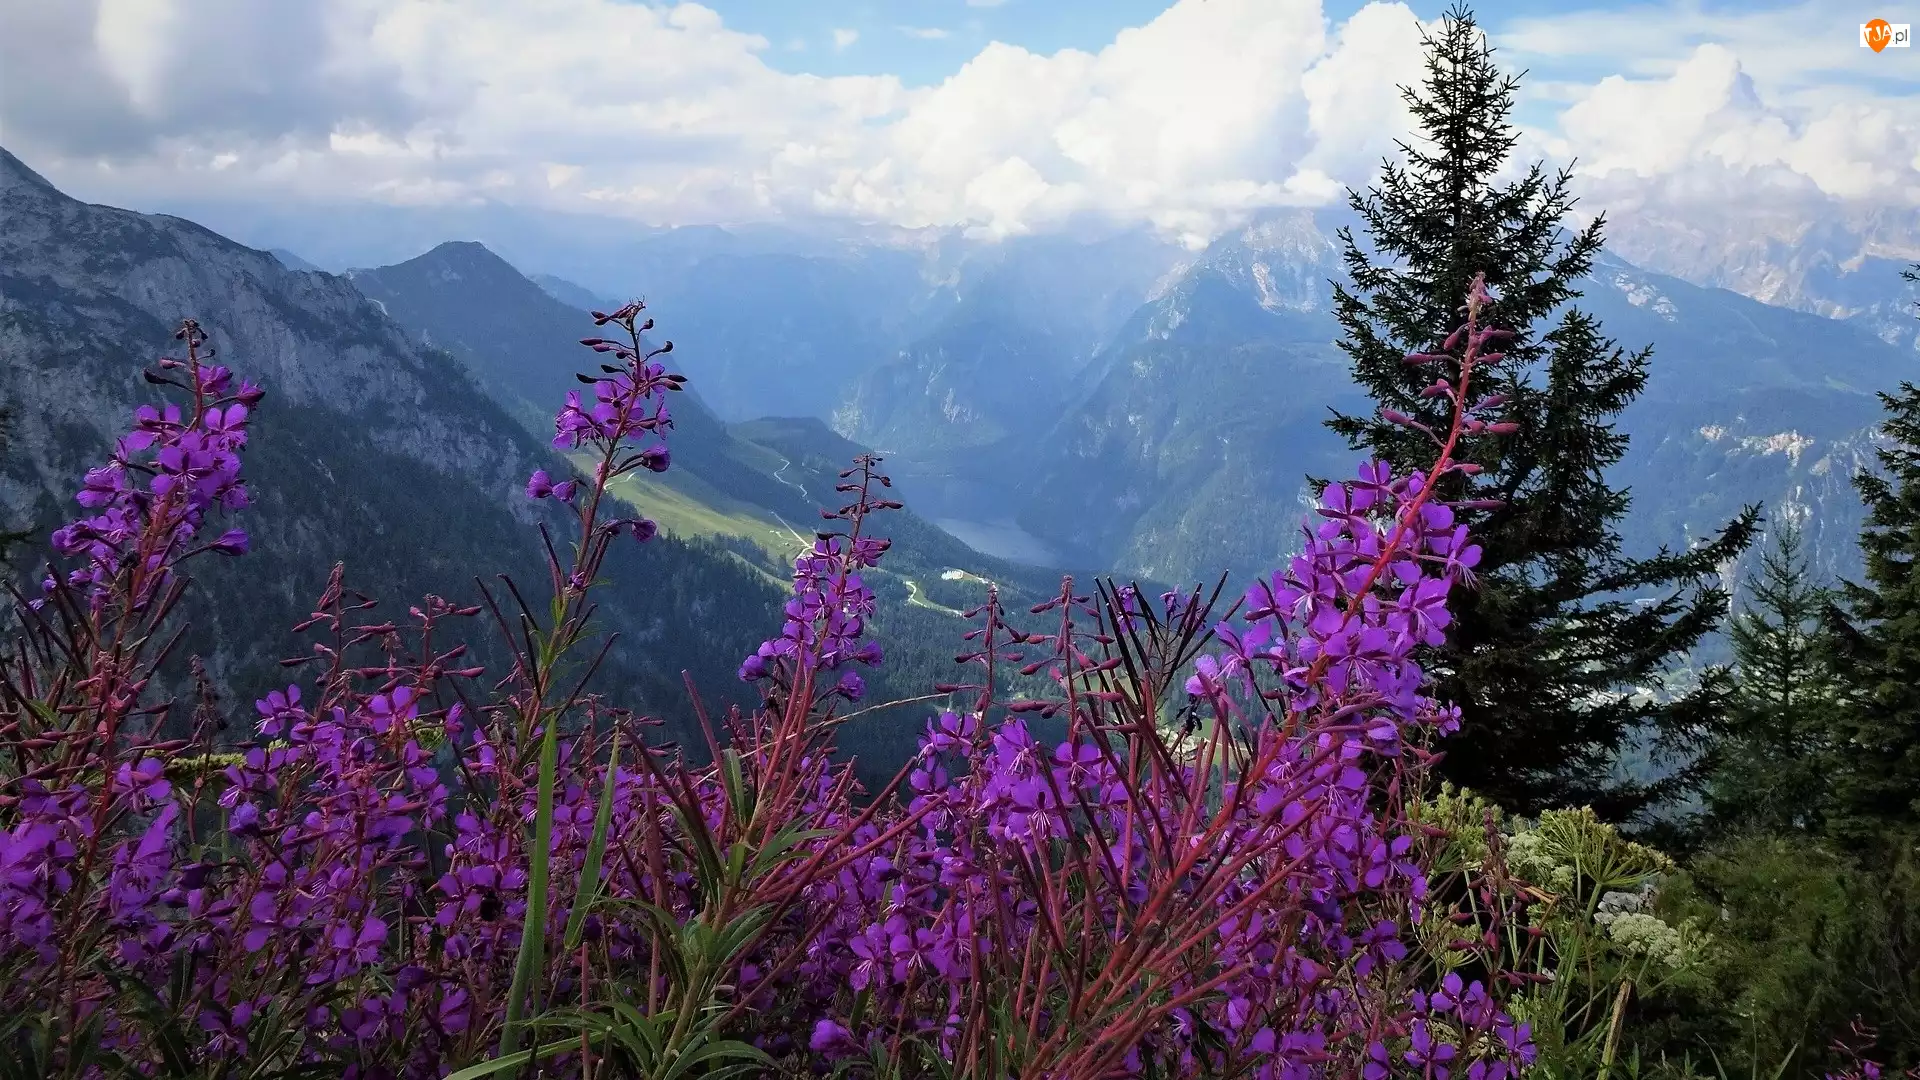 Alpy Berchtesgadeńskie, Drzewa, Niemcy, Góry, Berchtesgaden, Kwiaty, Fioletowe